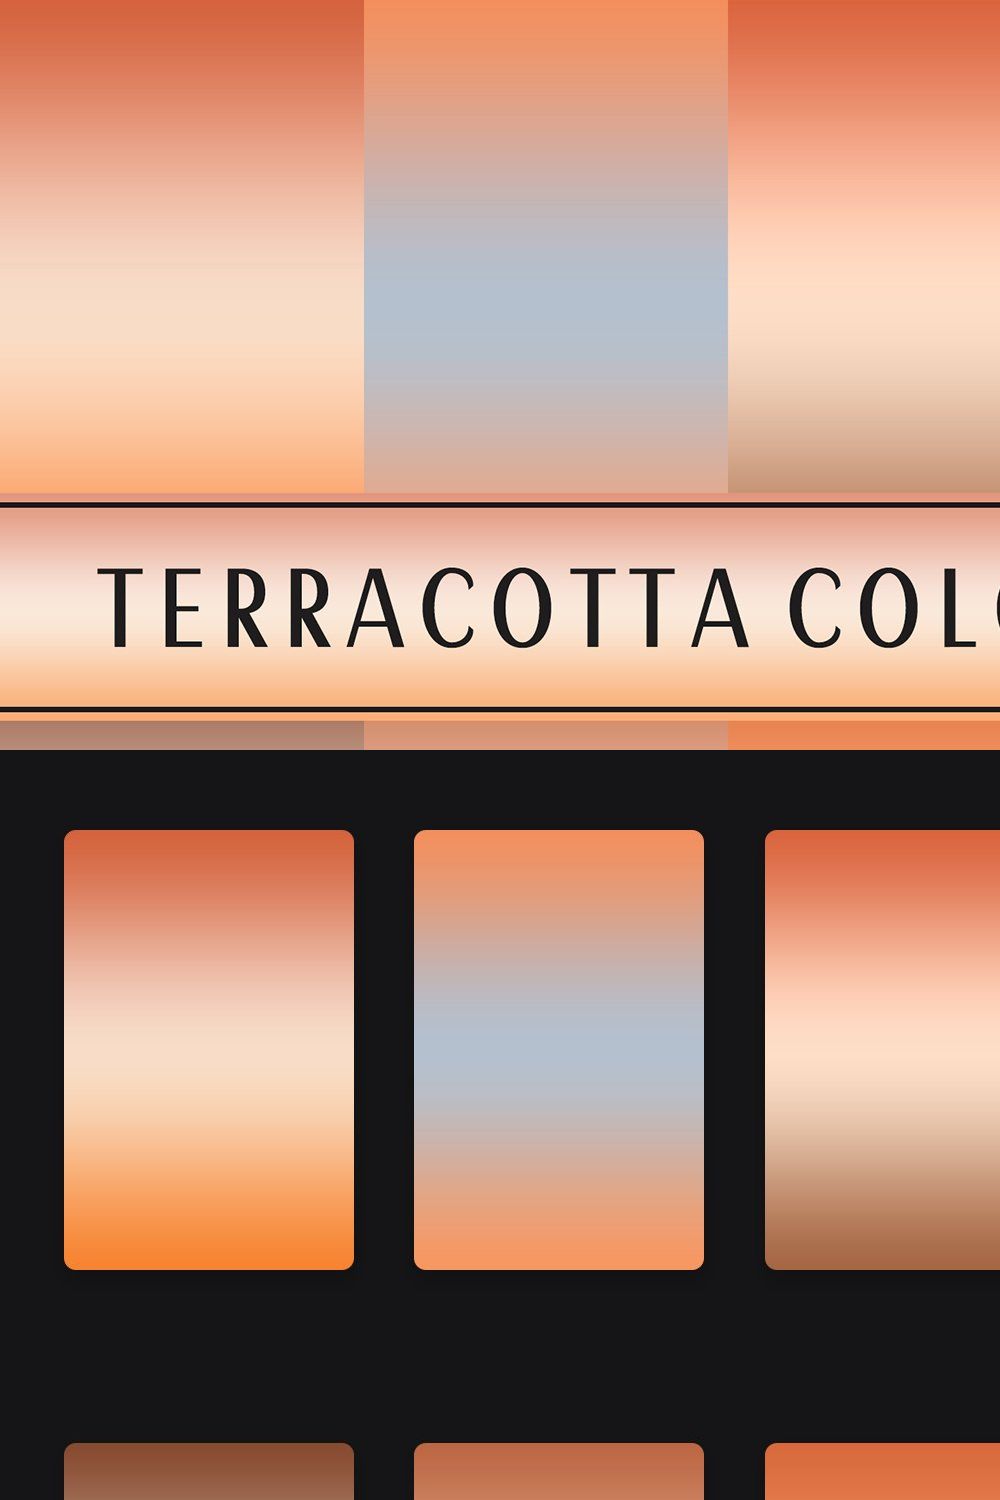 Terracotta Color Gradients pinterest preview image.